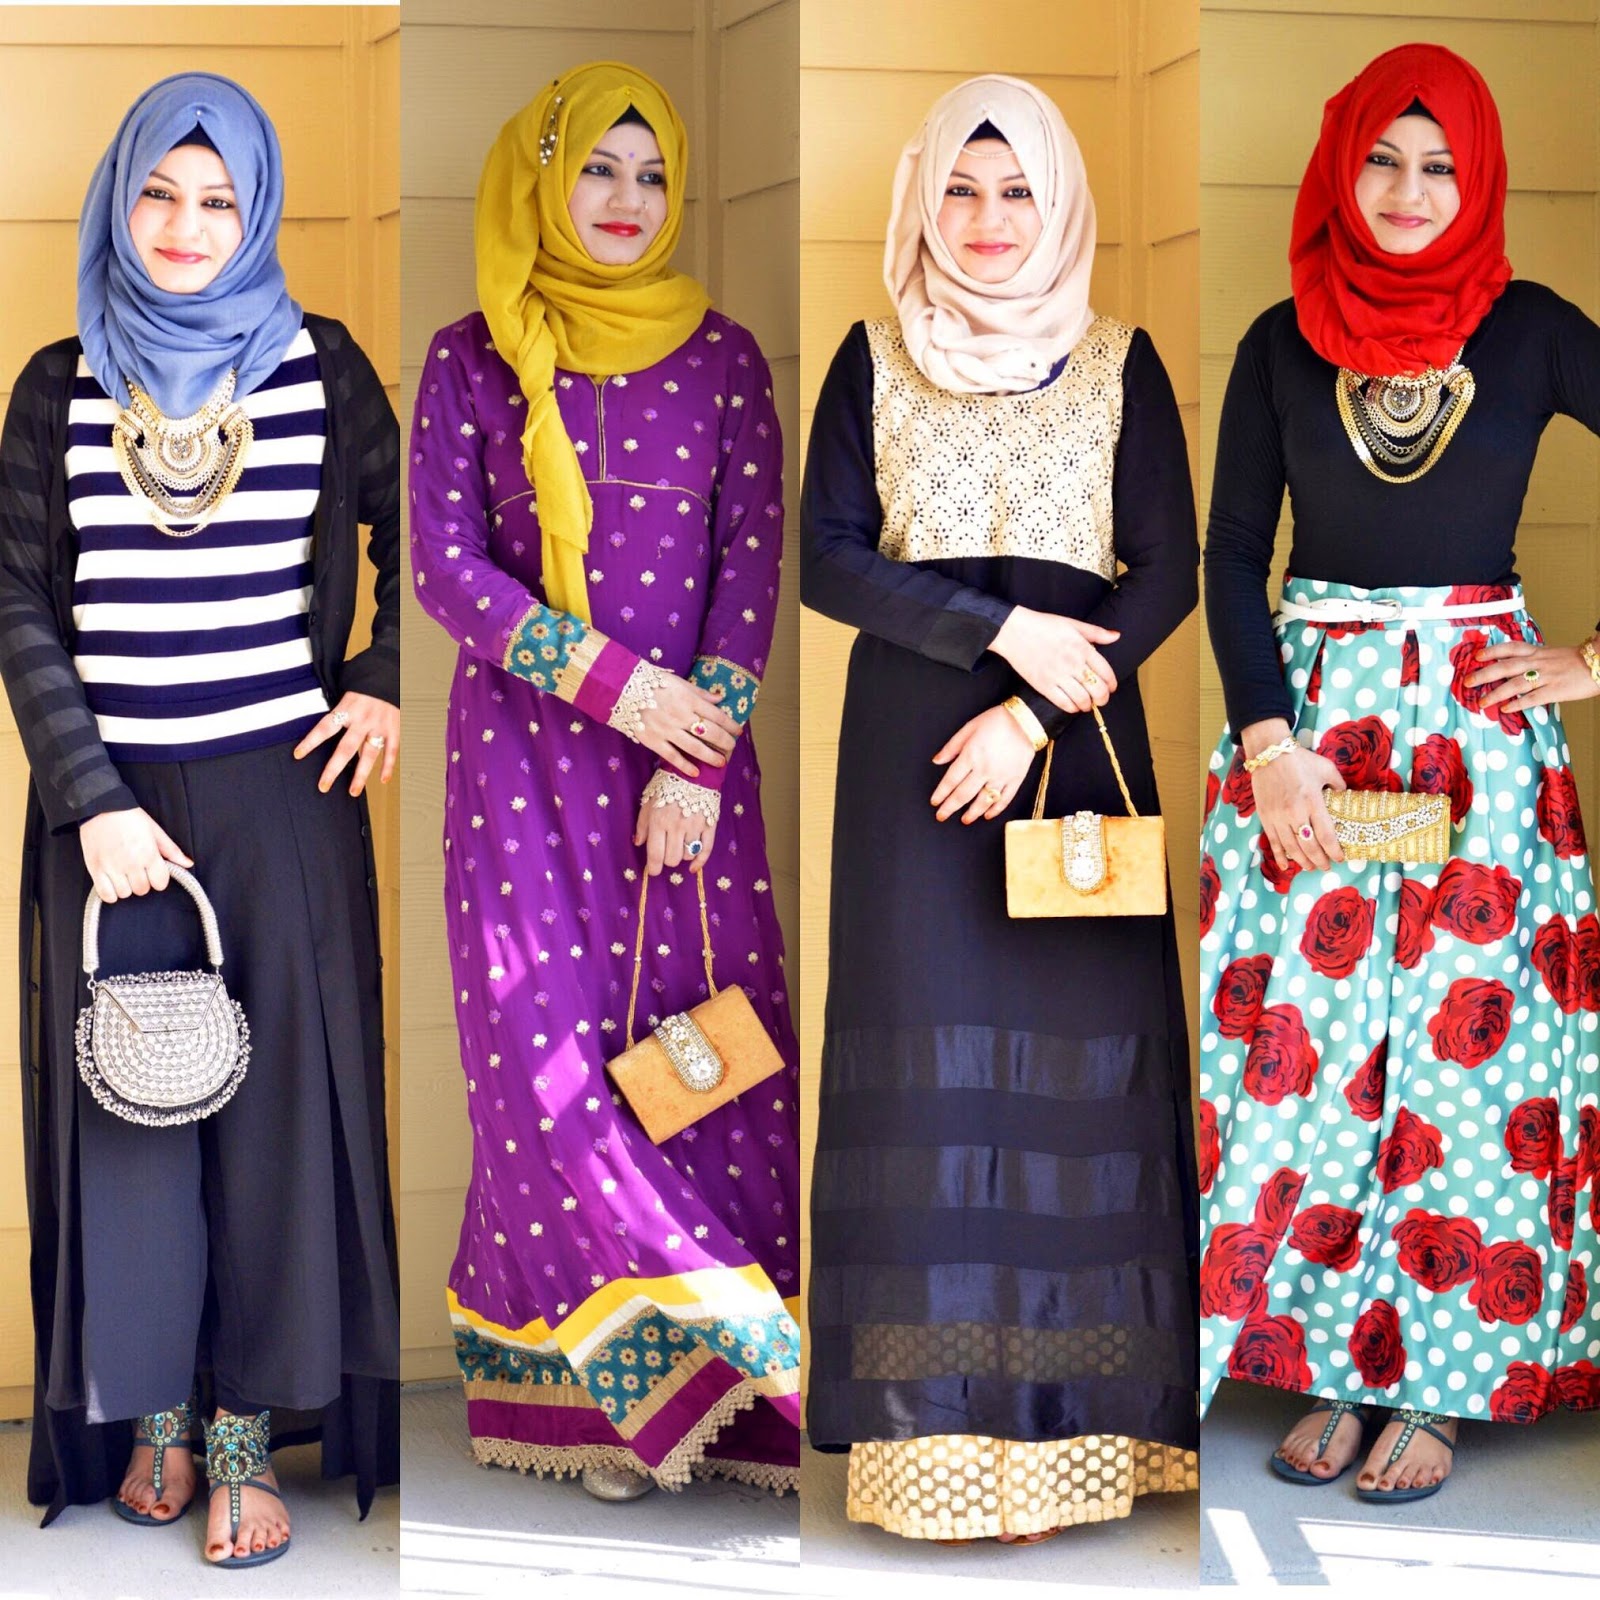 Hijab fashion inspiration for 2016  Muslim fashion clothing